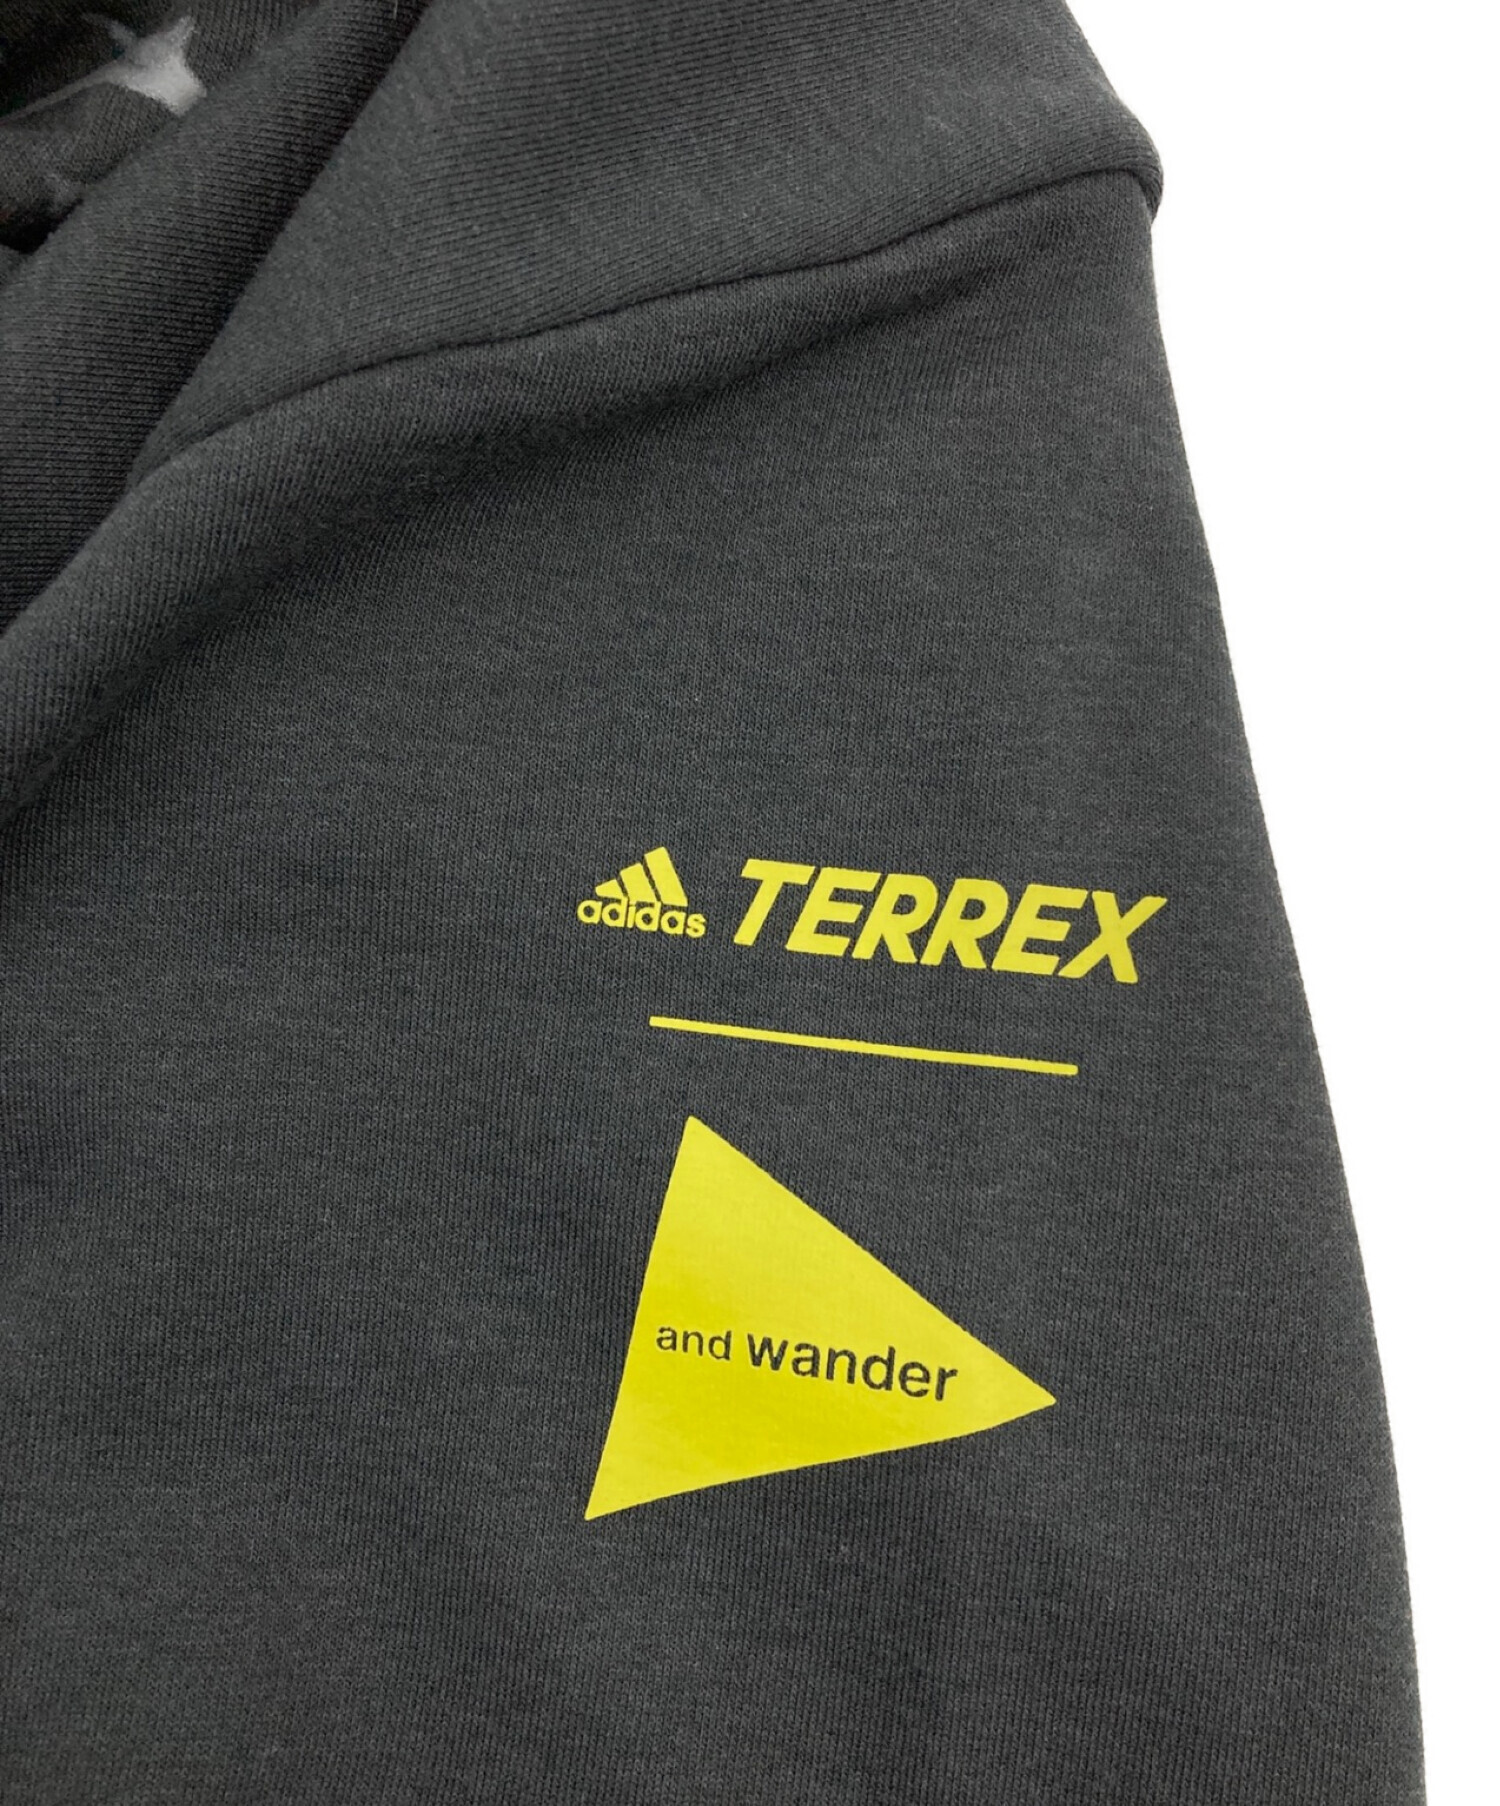 中古・古着通販】and wander (アンドワンダー) adidas TERREX